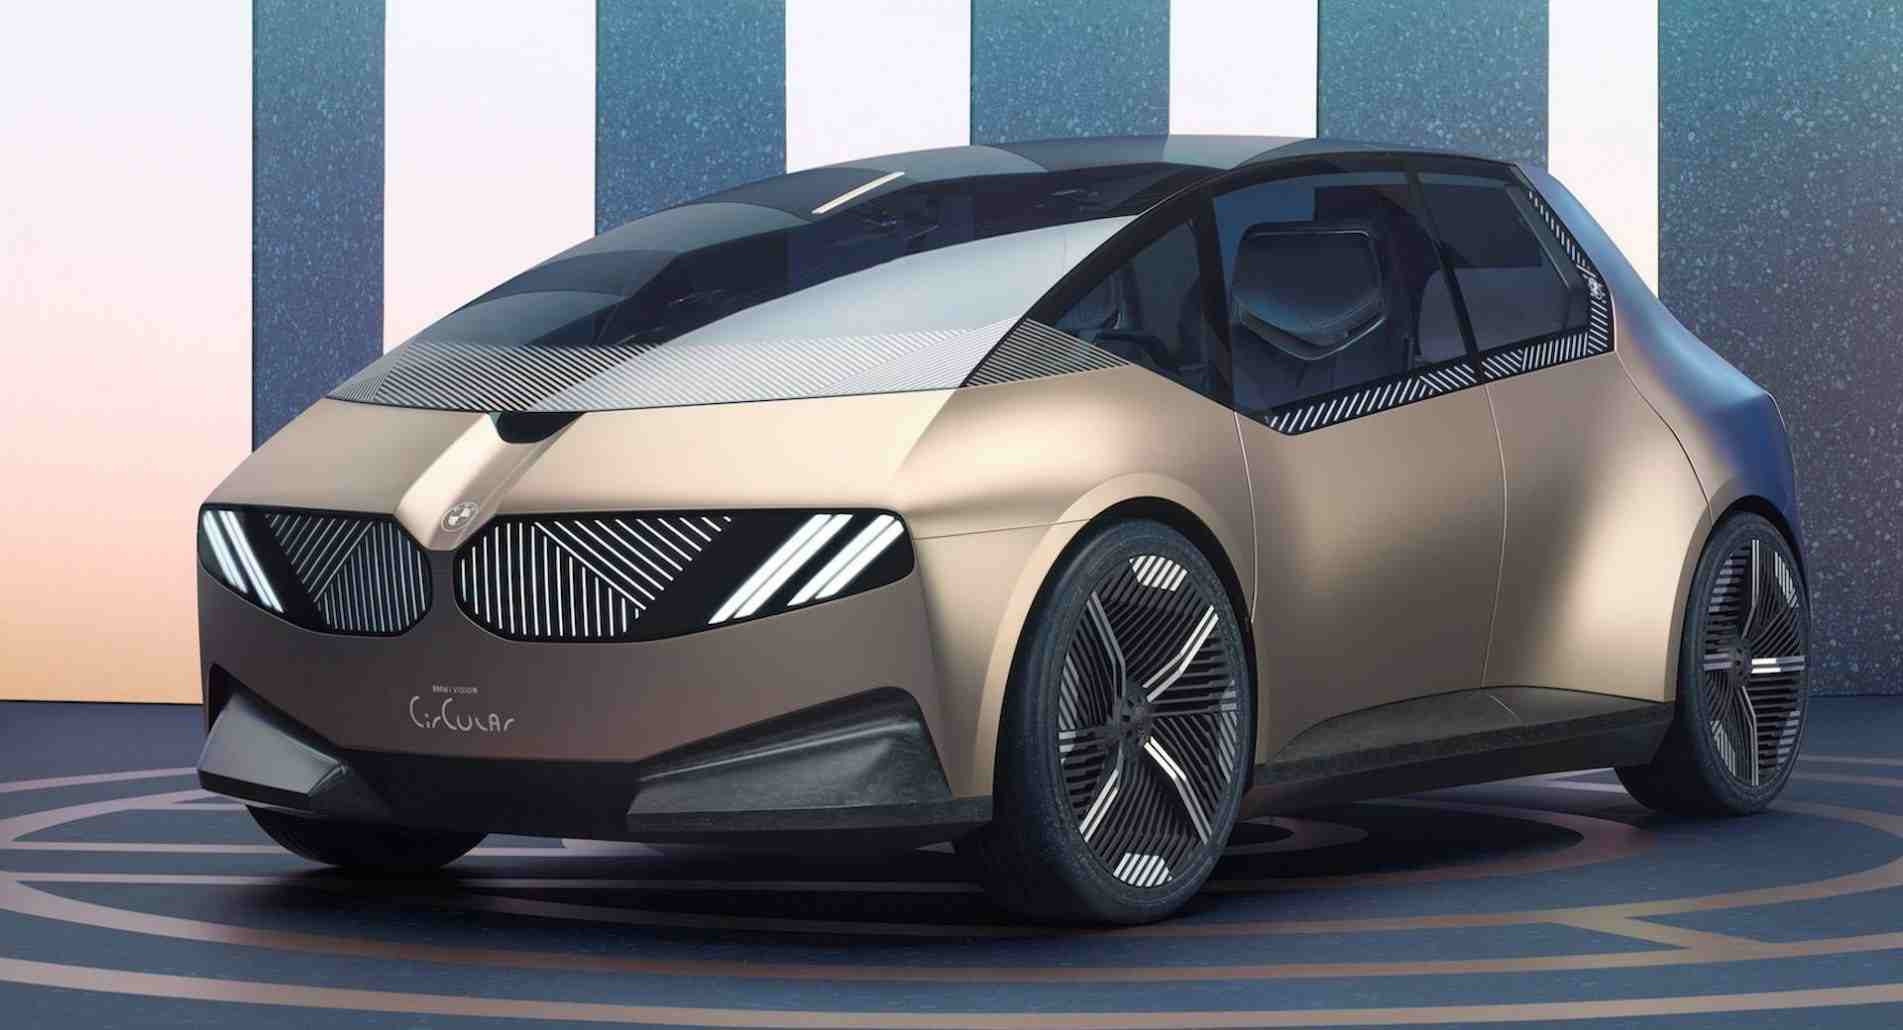 O avançado conceito do i Vision Circular, da BMW, previsto para 2040, aplica matérias-primas recicláveis.